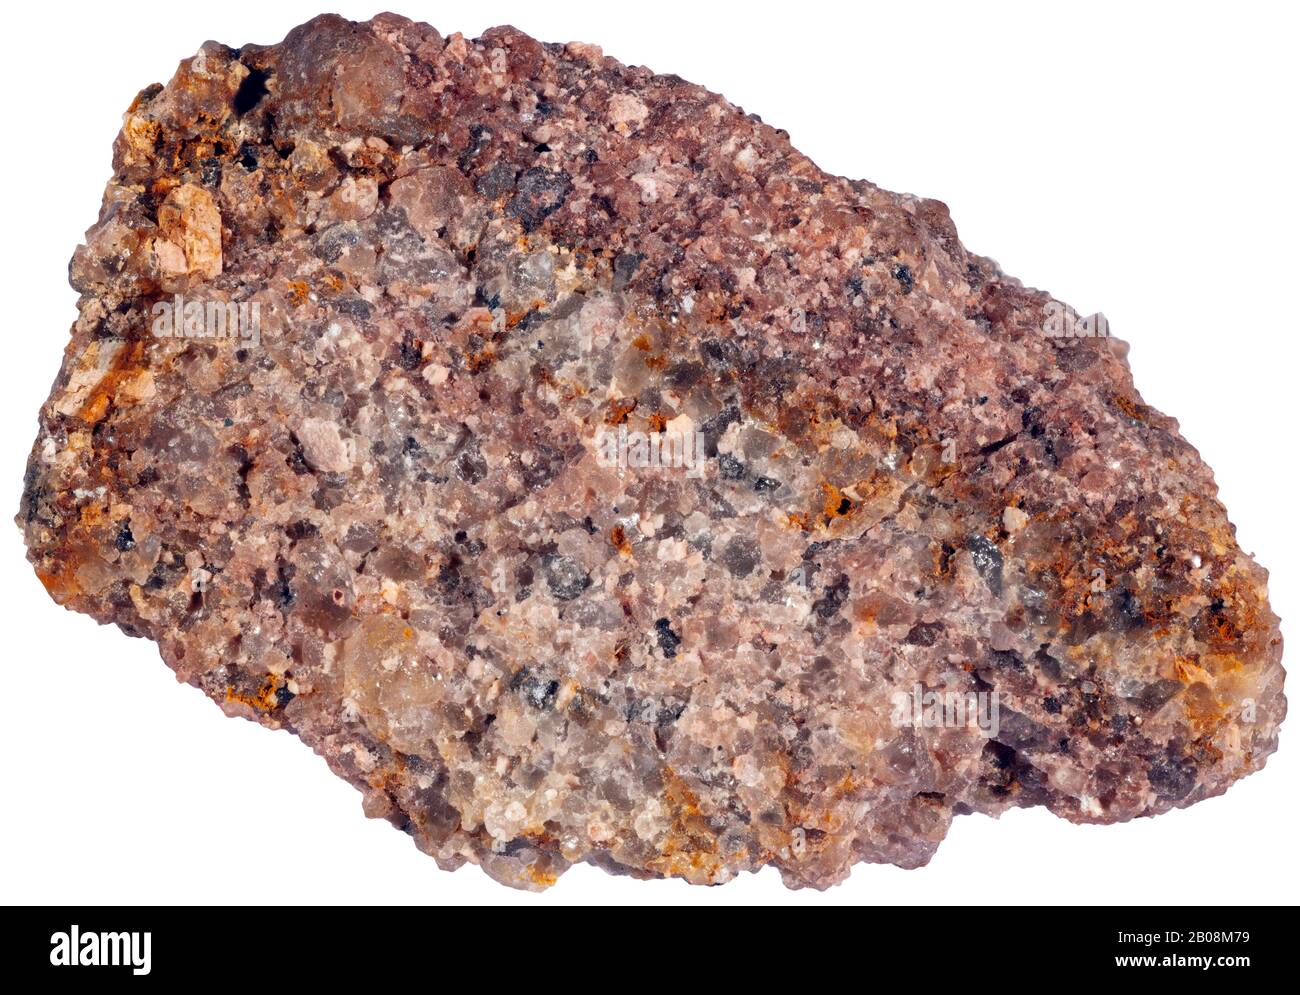 Arenaria, Siliclastic, Grenville, Quebec Arenaria è una roccia sedimentaria clastic composta principalmente di sabbia-sized (0.0625 - 2 mm) particelle minerali o. Foto Stock